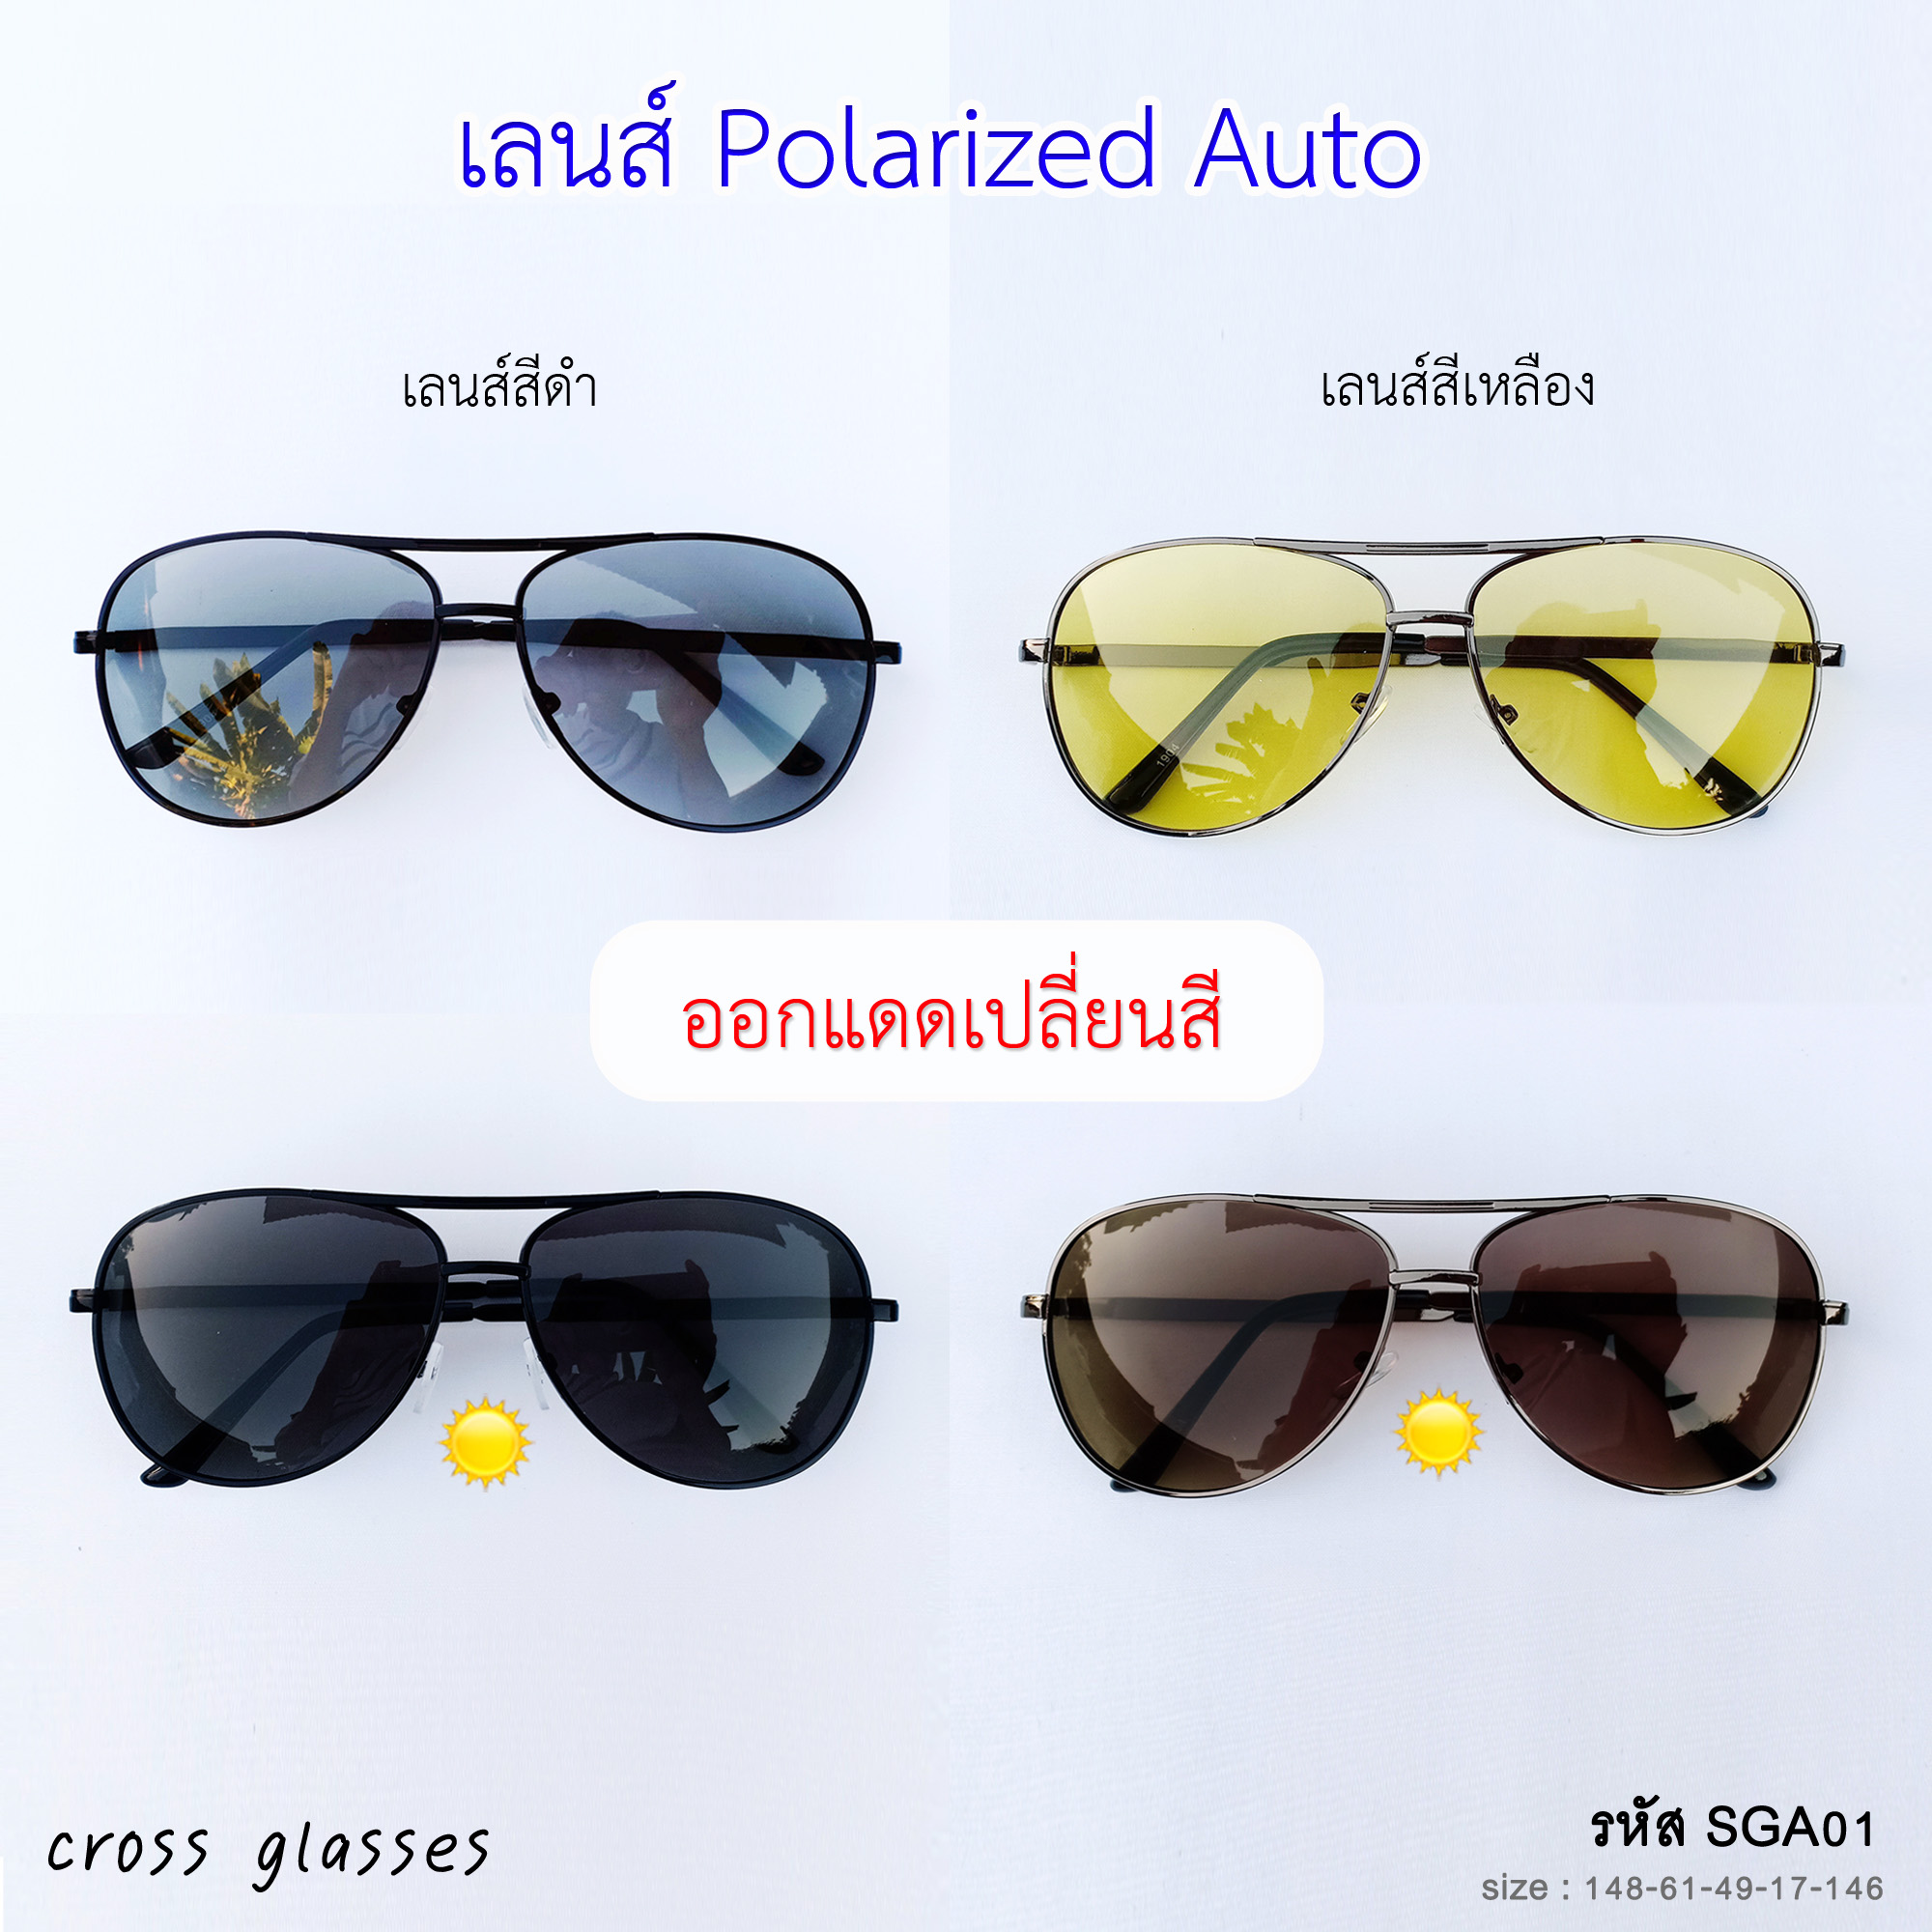 แว่นกันแดด เลนส์ Polarized Auto ออกแดดเปลี่ยนสี แว่นตาขับรถ SGA01  แถมฟรีกล่องแว่นพกพาคุณภาพดี+ผ้าเช็ดเลนส์